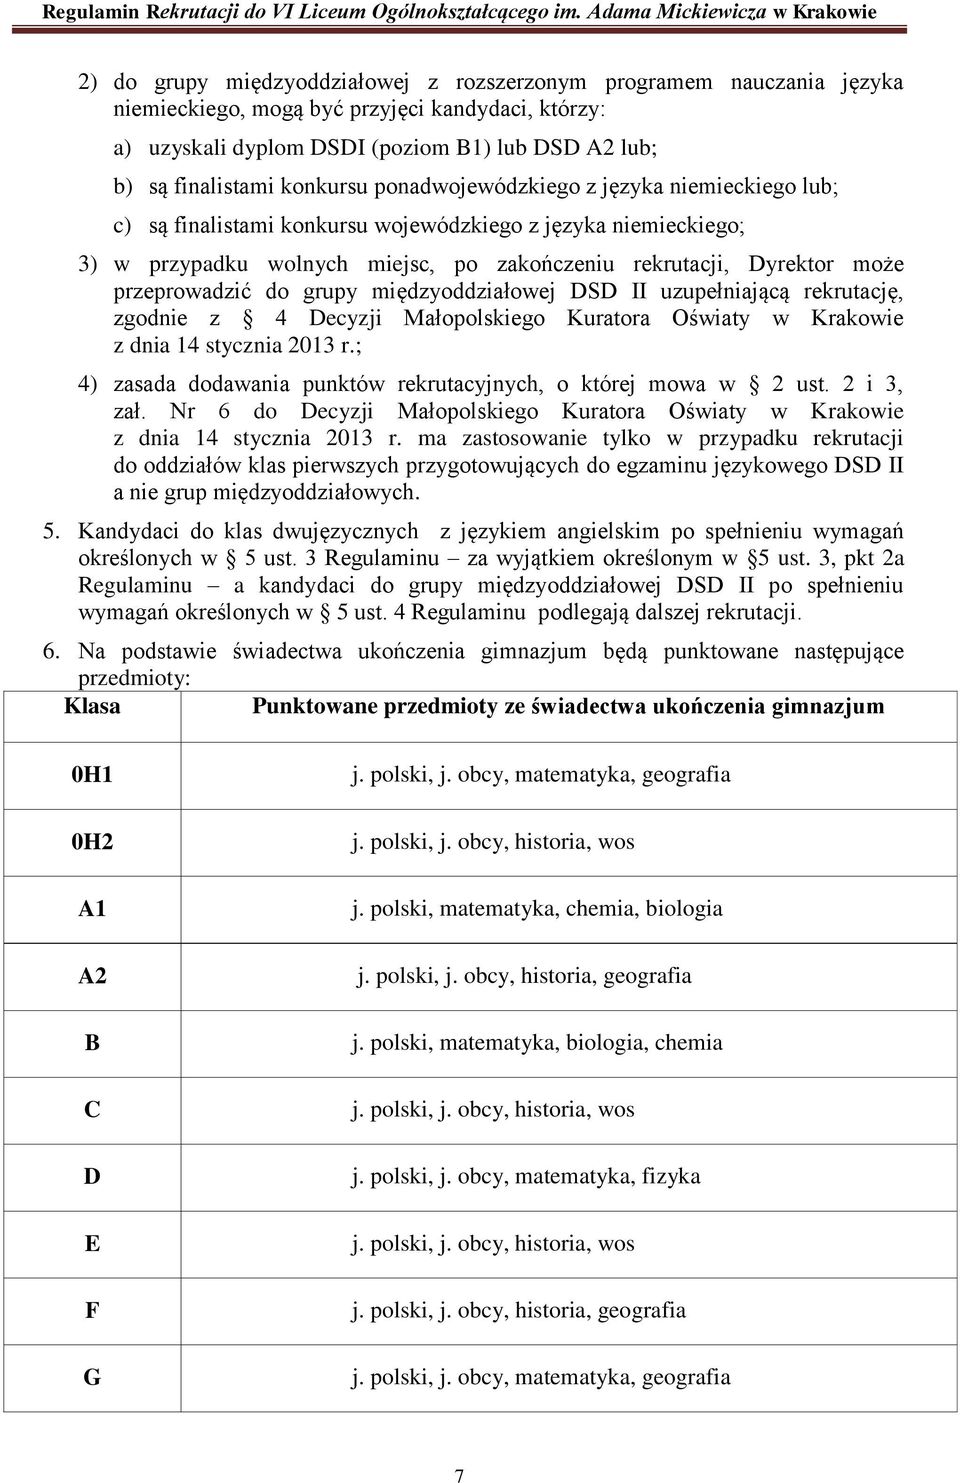 przeprowadzić do grupy międzyoddziałowej DSD II uzupełniającą rekrutację, zgodnie z 4 Decyzji Małopolskiego Kuratora Oświaty w Krakowie z dnia 14 stycznia 2013 r.